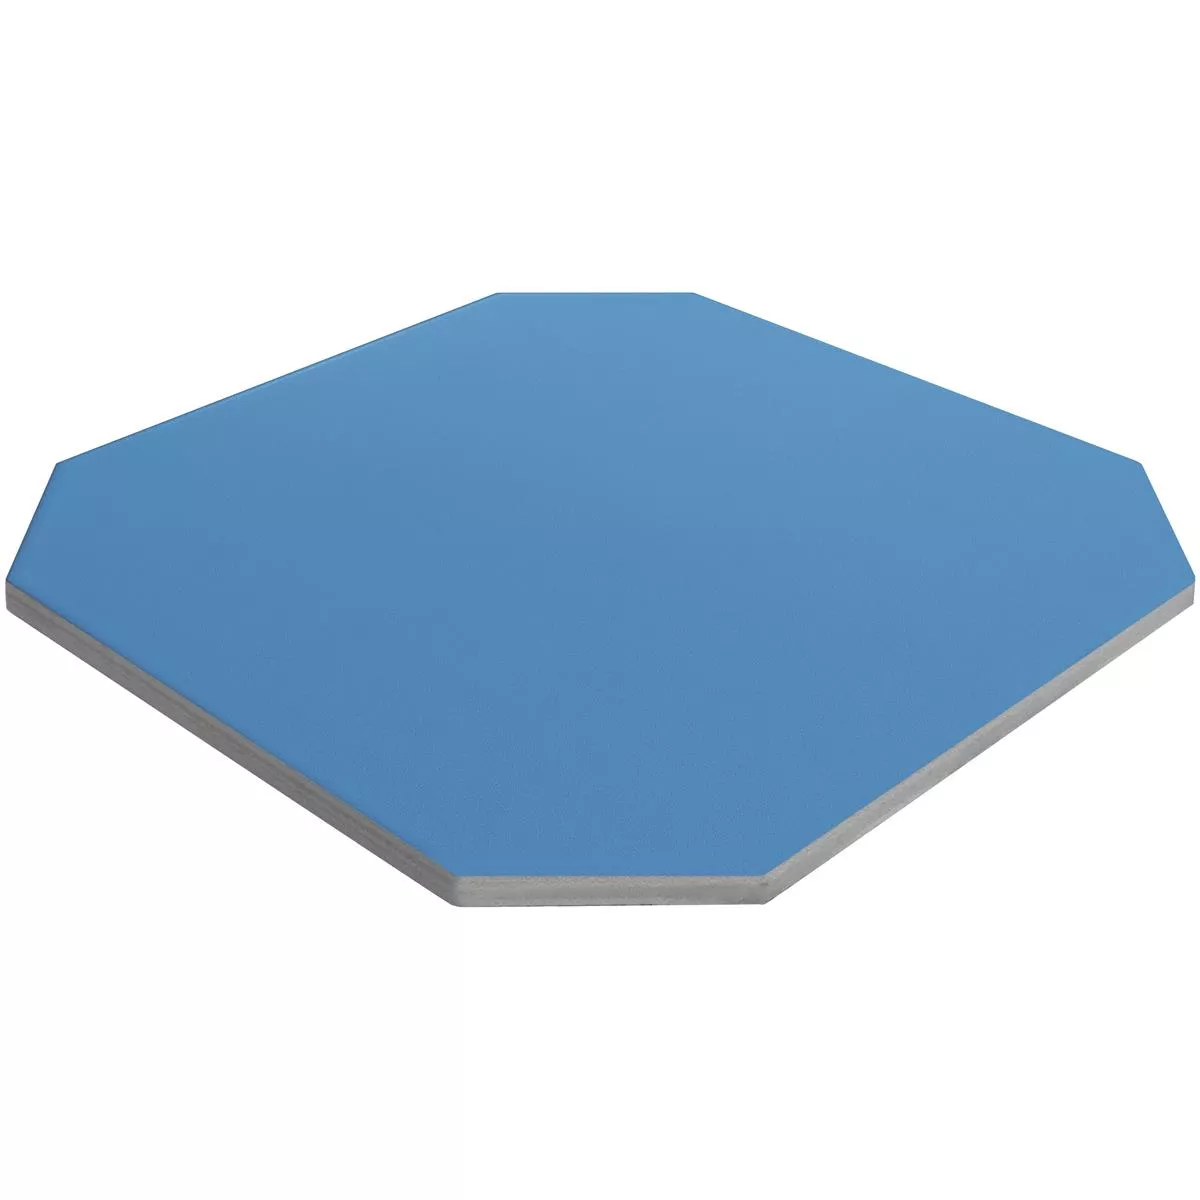 Πορσελάνινα Σκεύη Πλακάκια Genexia Uni Μπλε Οκτάγωνο 20x20cm